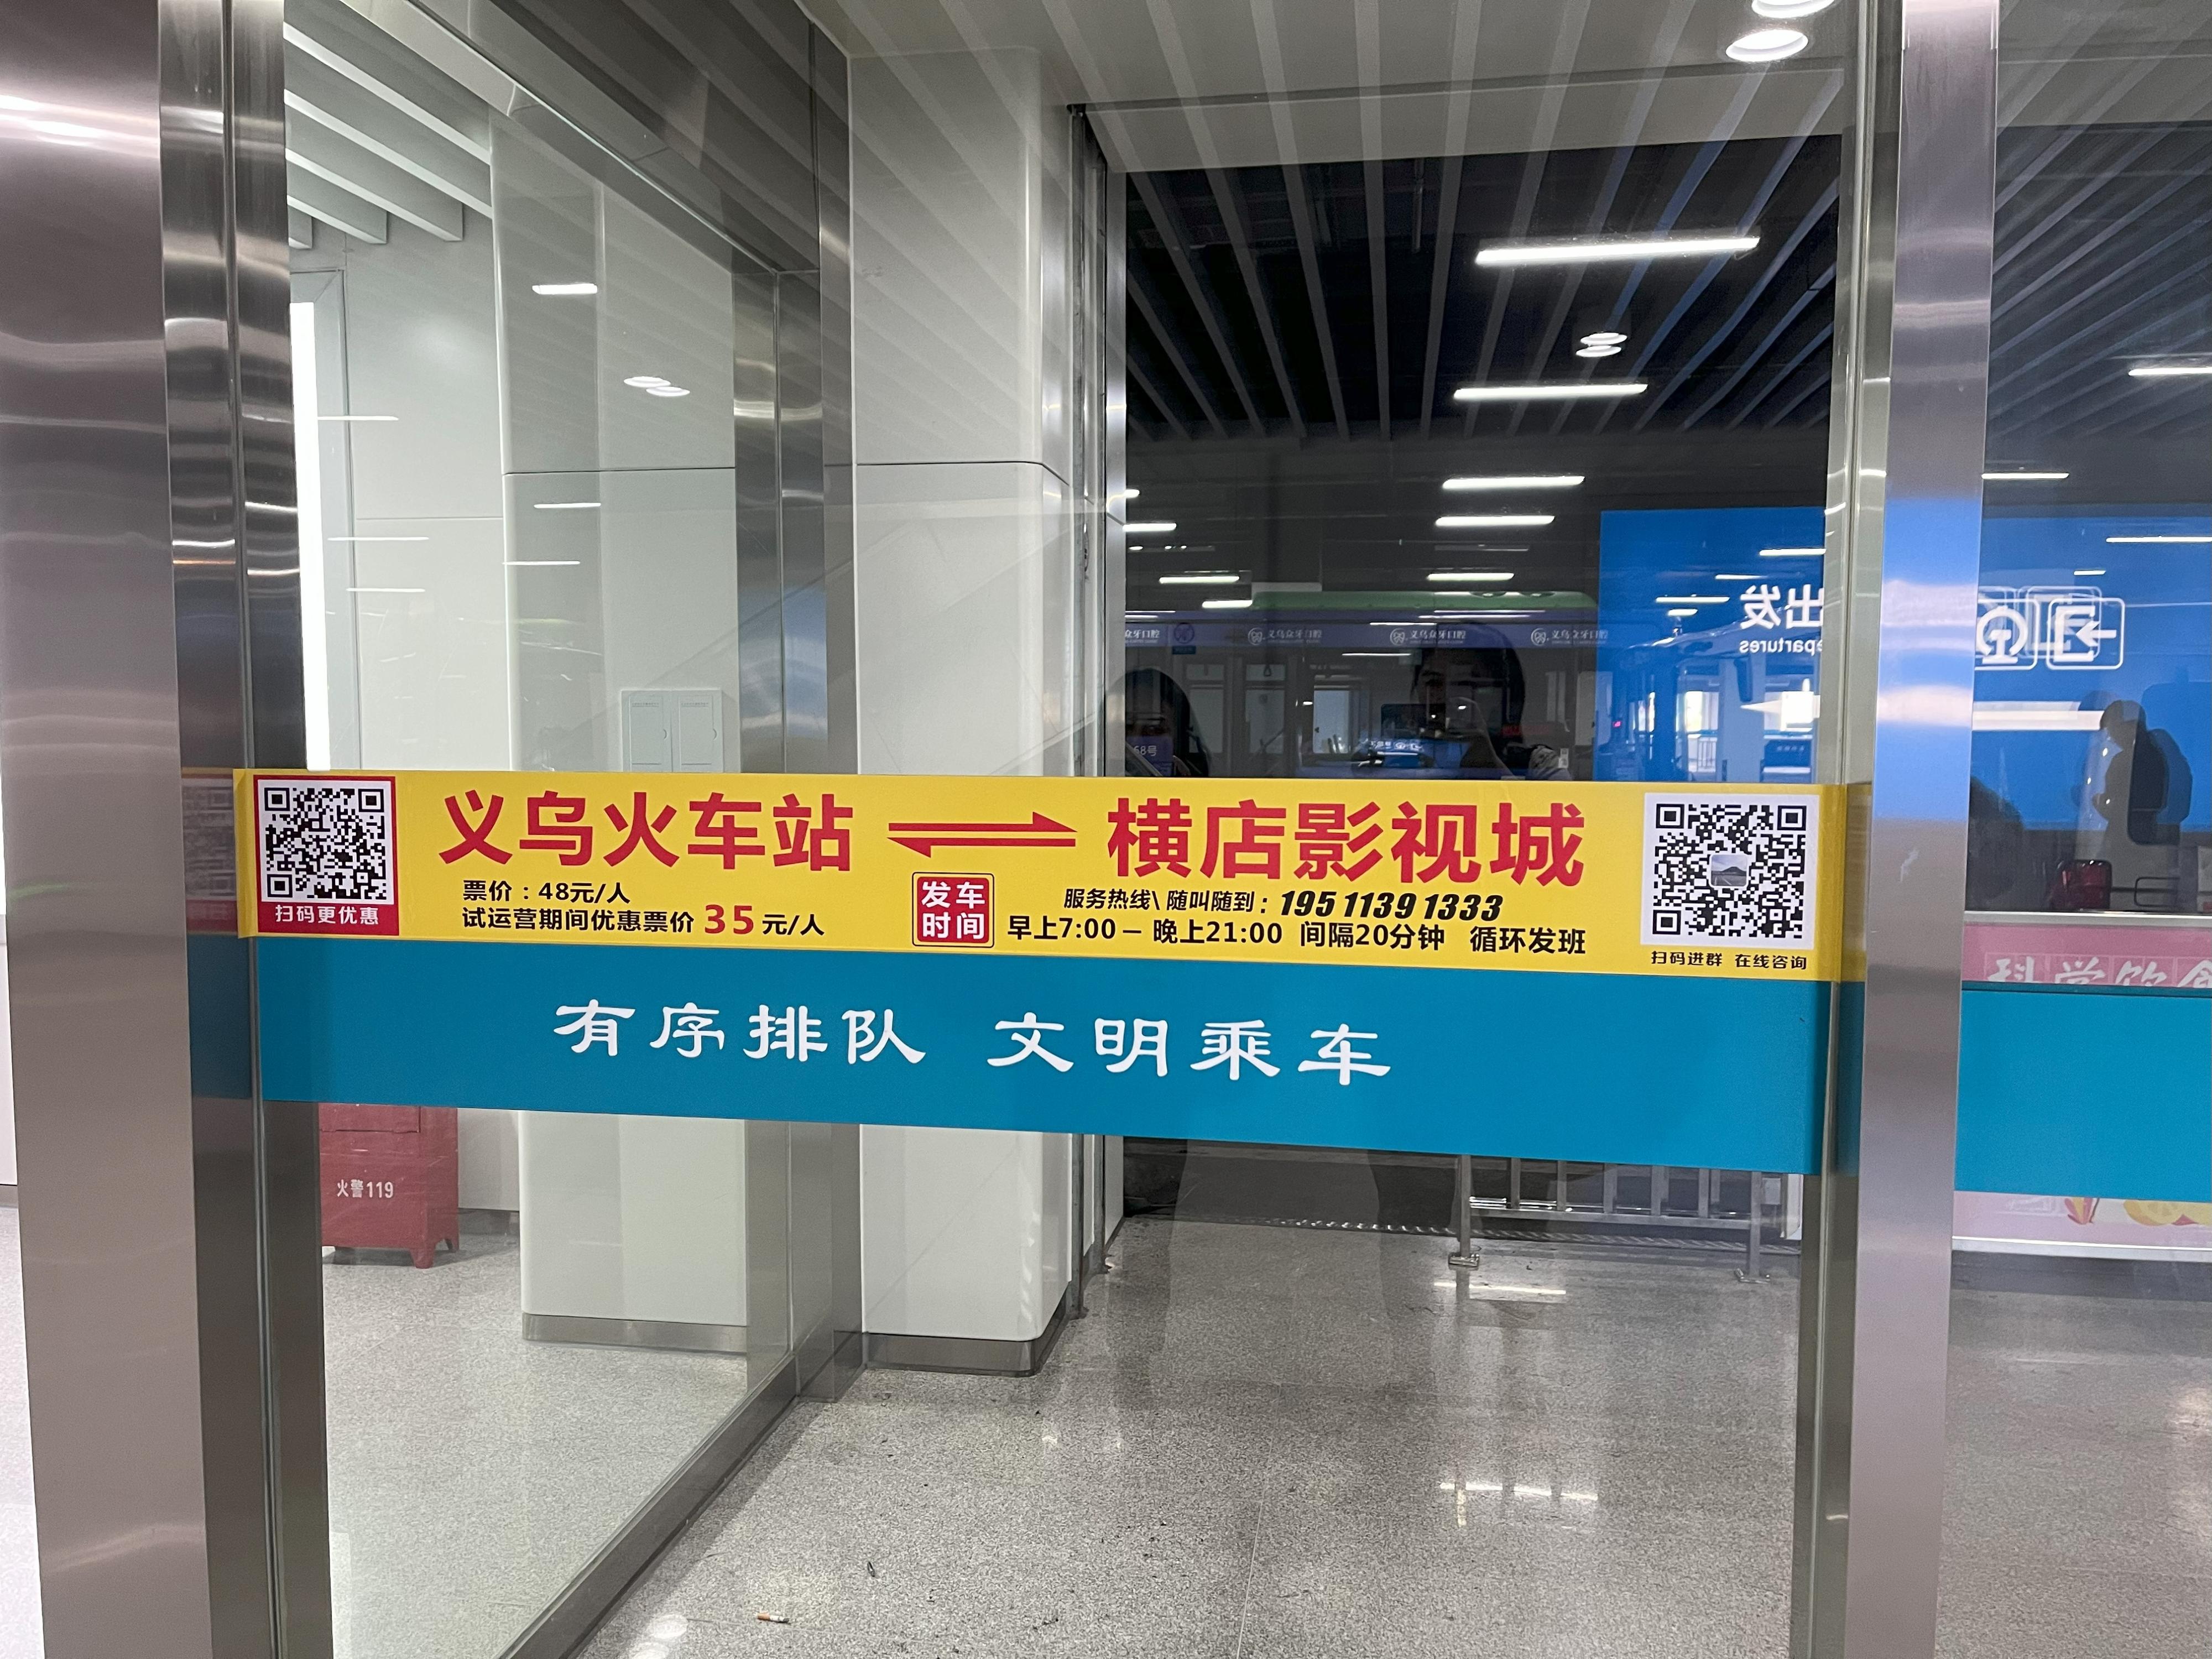 The fare is 35 yuan per person.